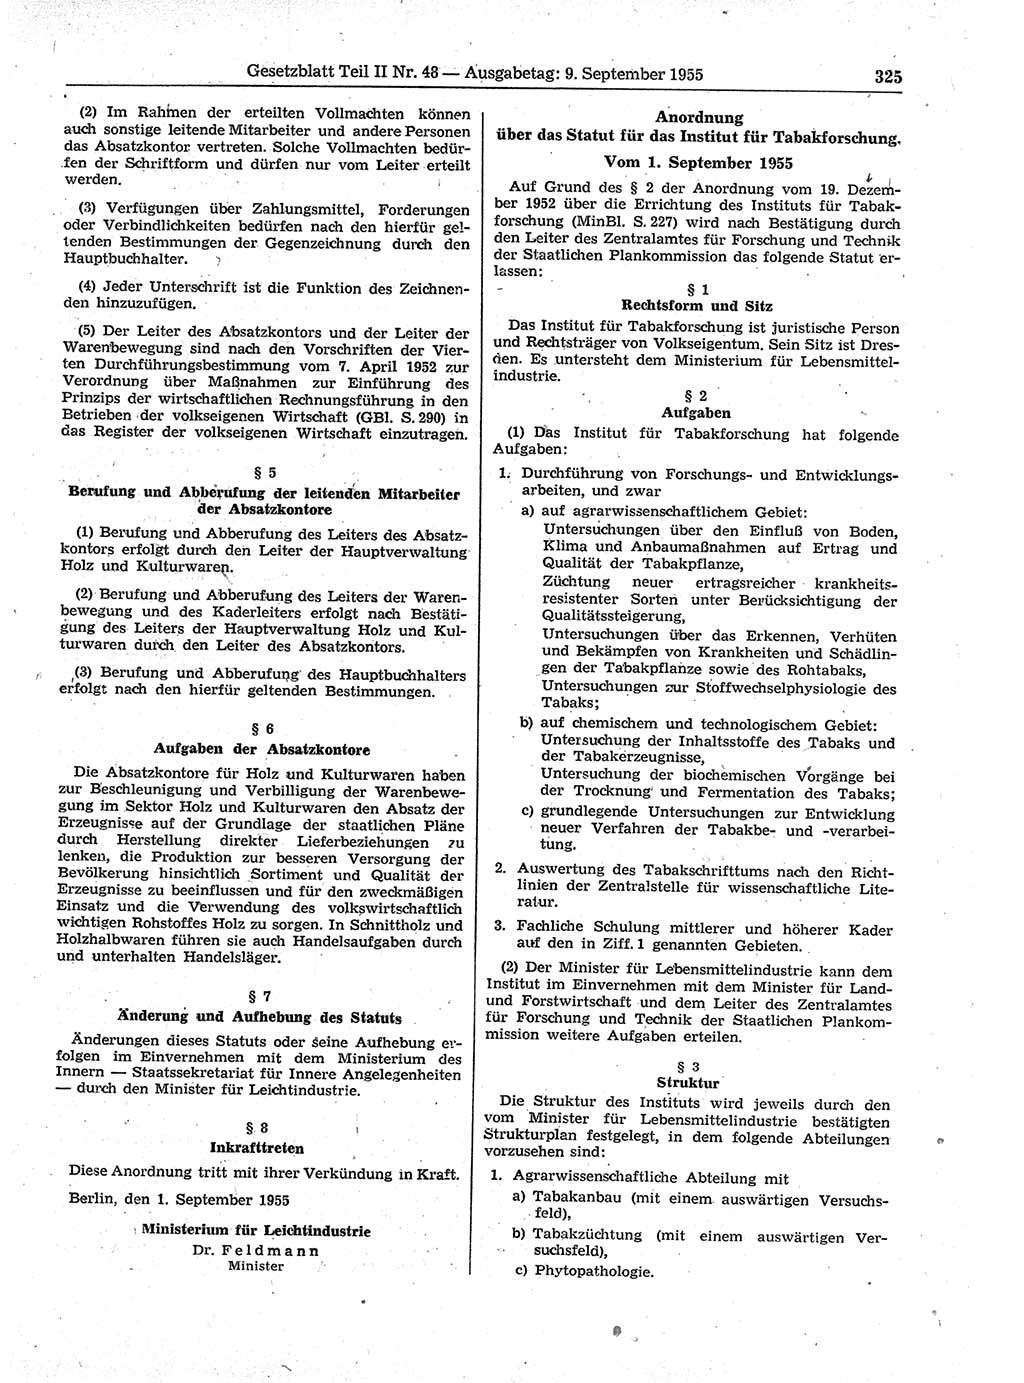 Gesetzblatt (GBl.) der Deutschen Demokratischen Republik (DDR) Teil ⅠⅠ 1955, Seite 325 (GBl. DDR ⅠⅠ 1955, S. 325)